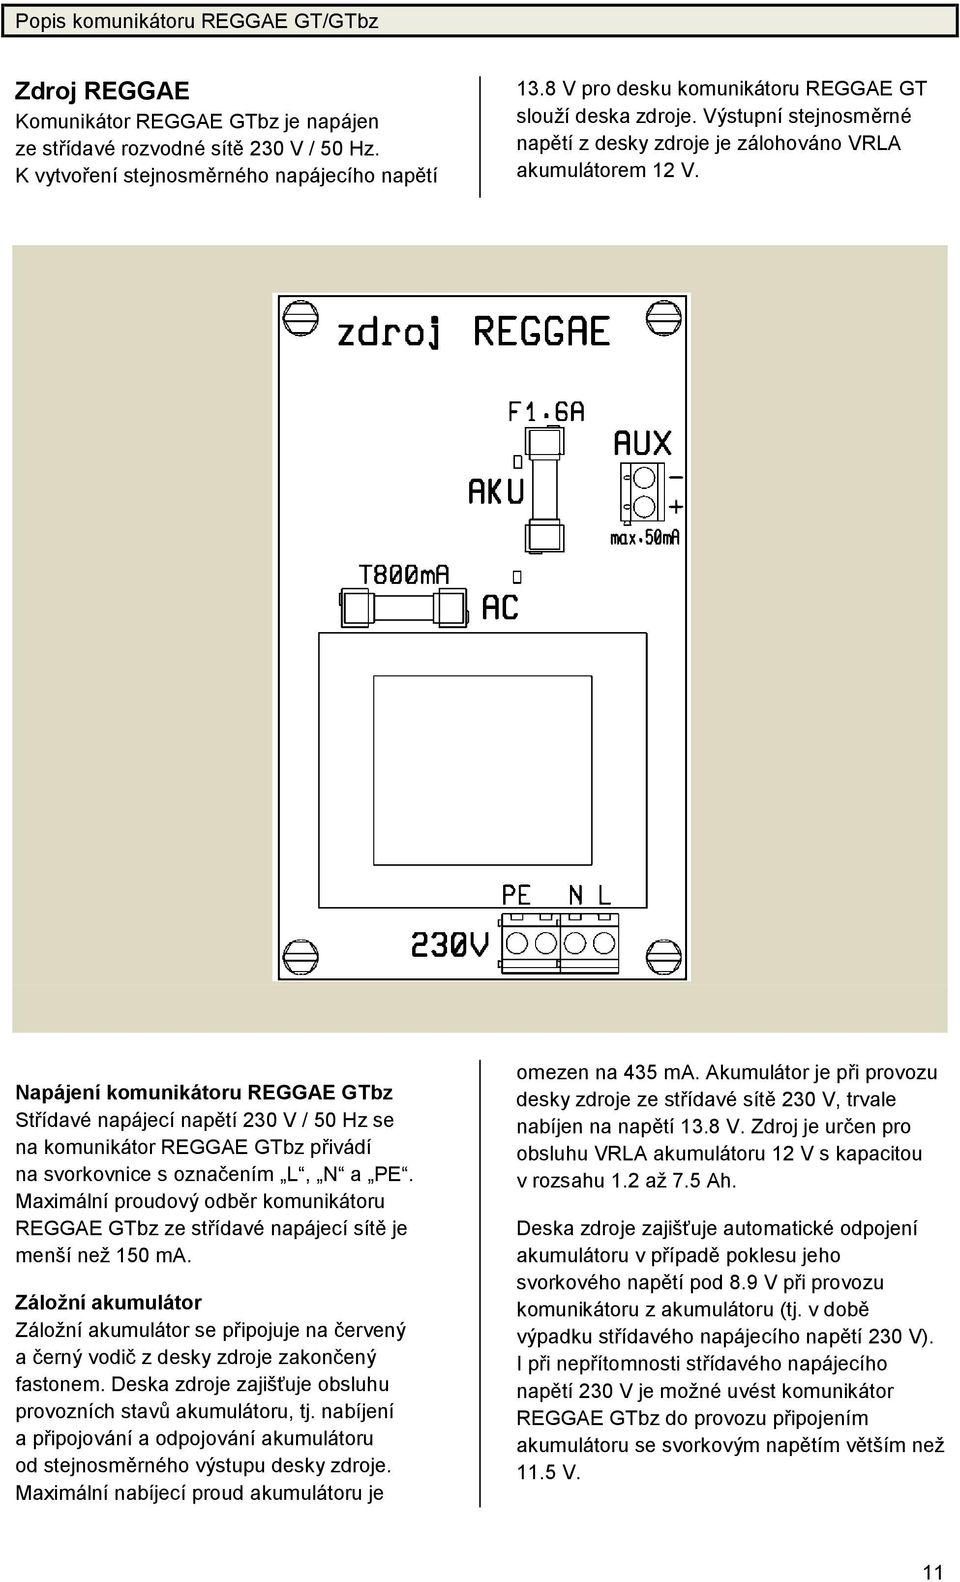 Napá jeníkomuniká toru REGGAE GTbz Střídavé napájecínapě tí230 V / 50 Hz se na komunikátor REGGAE GTbz přivádí na svorkovnice s označ ením L, N a PE.